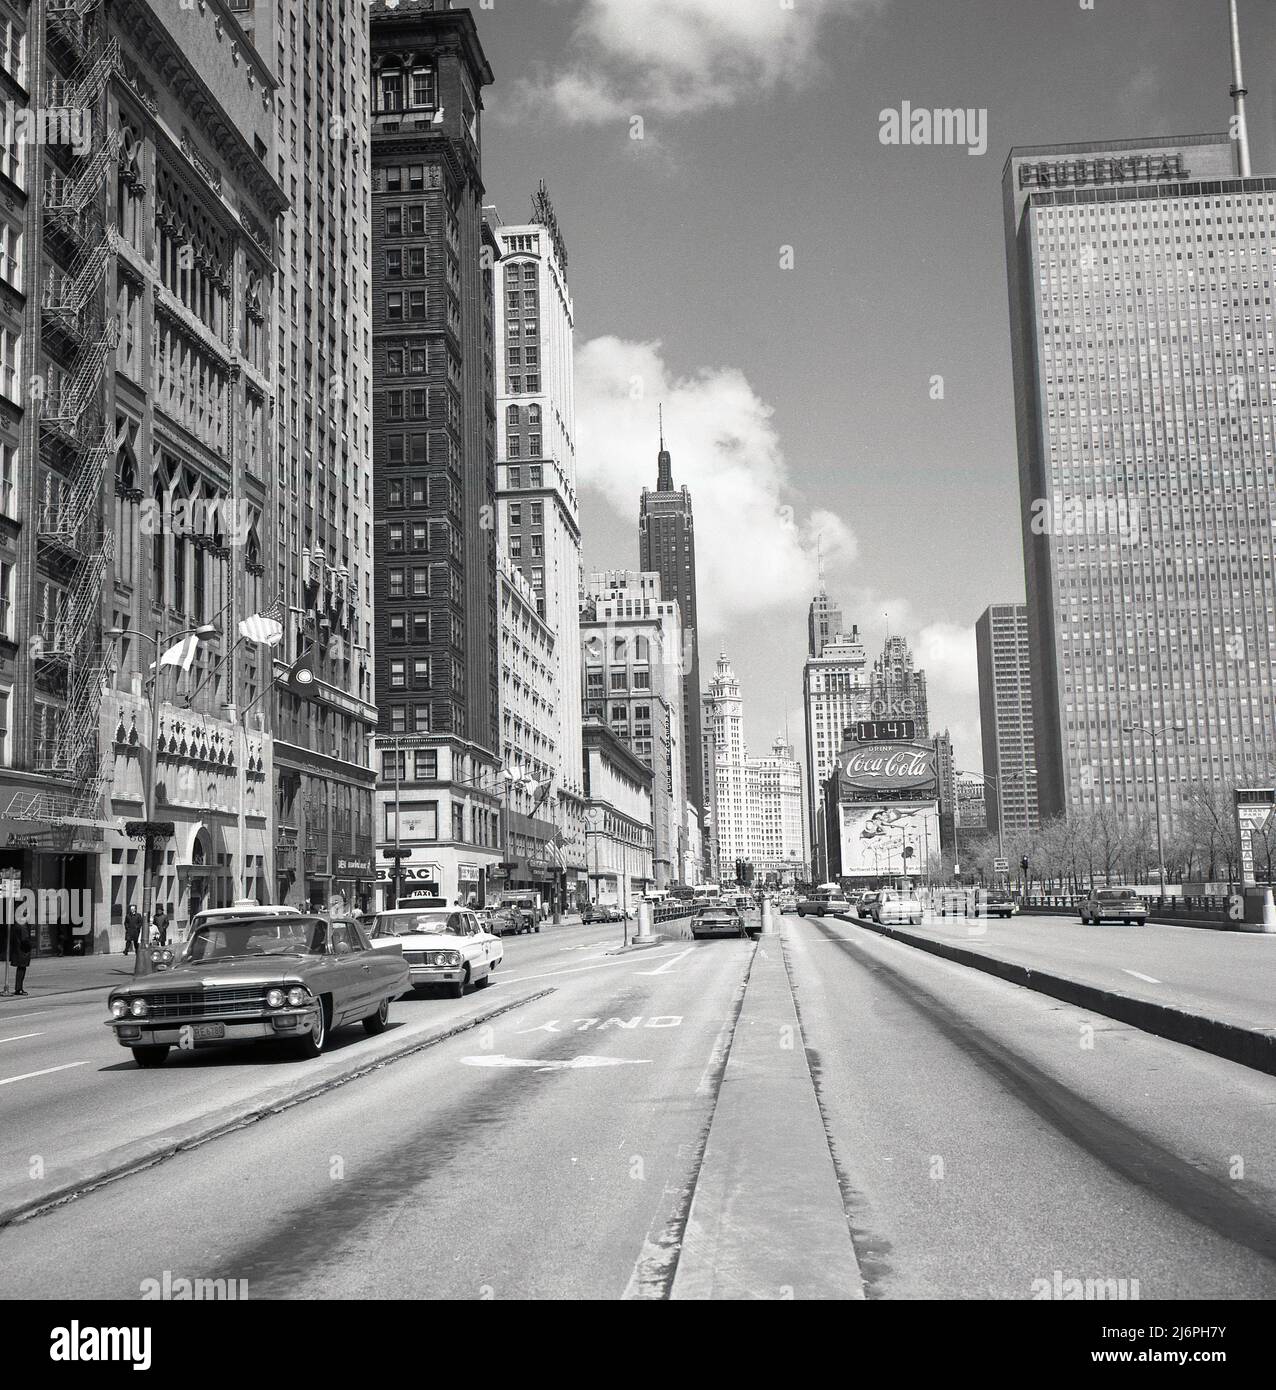 1950s, immagine storica di J Allan Cash di N. Michigan Ave, Chicago, USA, che mostra il Maremont Bldg, Prudential Building e automobili americane dell'epoca. La sede centrale della Prudential, società di assicurazioni americana, fu un edificio di 41 piani completato nel 1955, e significativo come il primo grattacielo costruito a Chicago dalla Grande depressione del 1930s e dalla seconda Guerra Mondiale. Sull'estrema destra, l'ingresso al parcheggio sotterraneo di Grant Park. Aperto nel 1954, il Grant Park (North) Garage, era un enorme parcheggio comunale con tre piani e 1.850 posti. Foto Stock